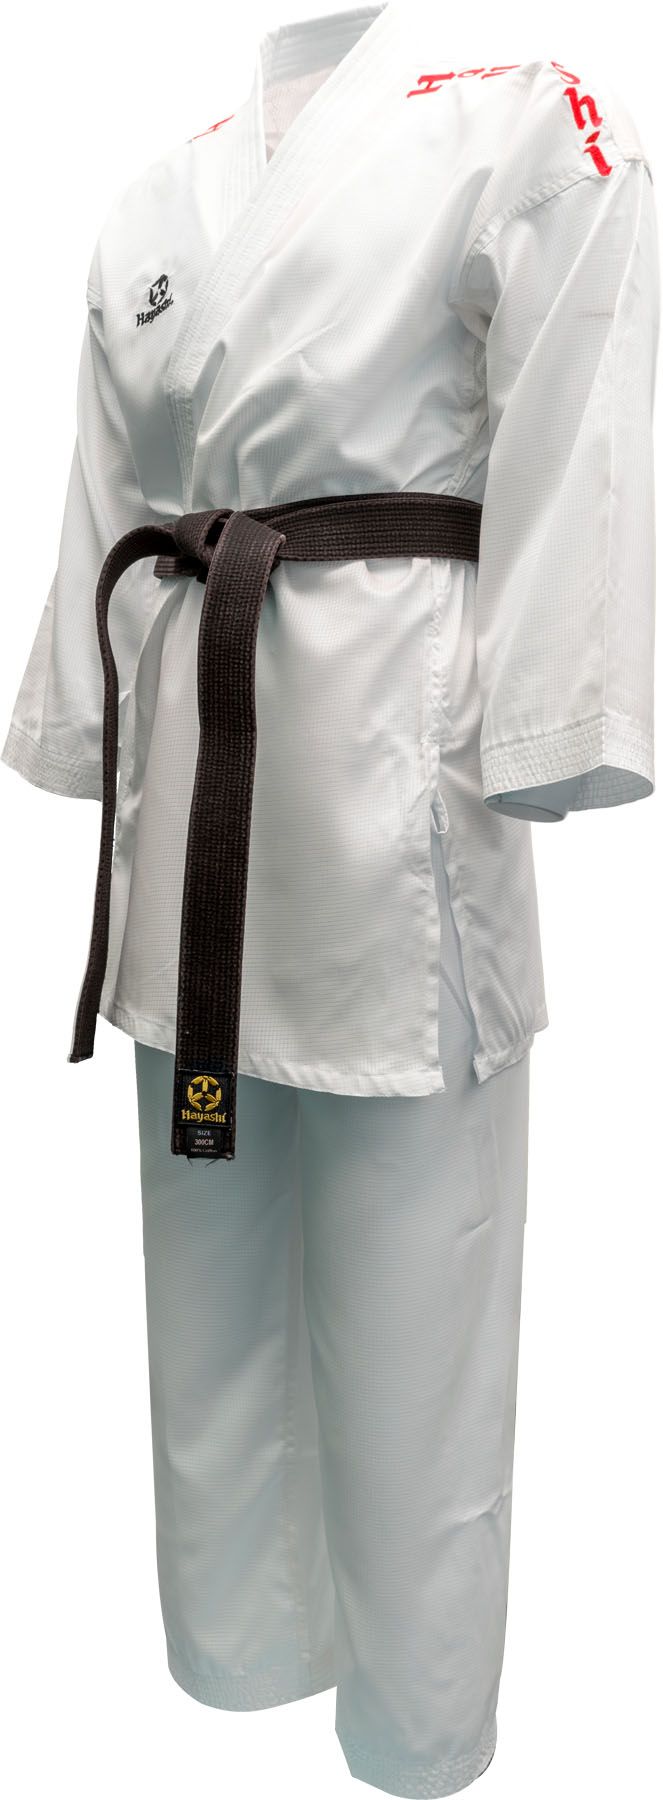 Hayashi kumite kimono AirDeluxe - Approuvé WKF, blanc/rouge, 0474-11